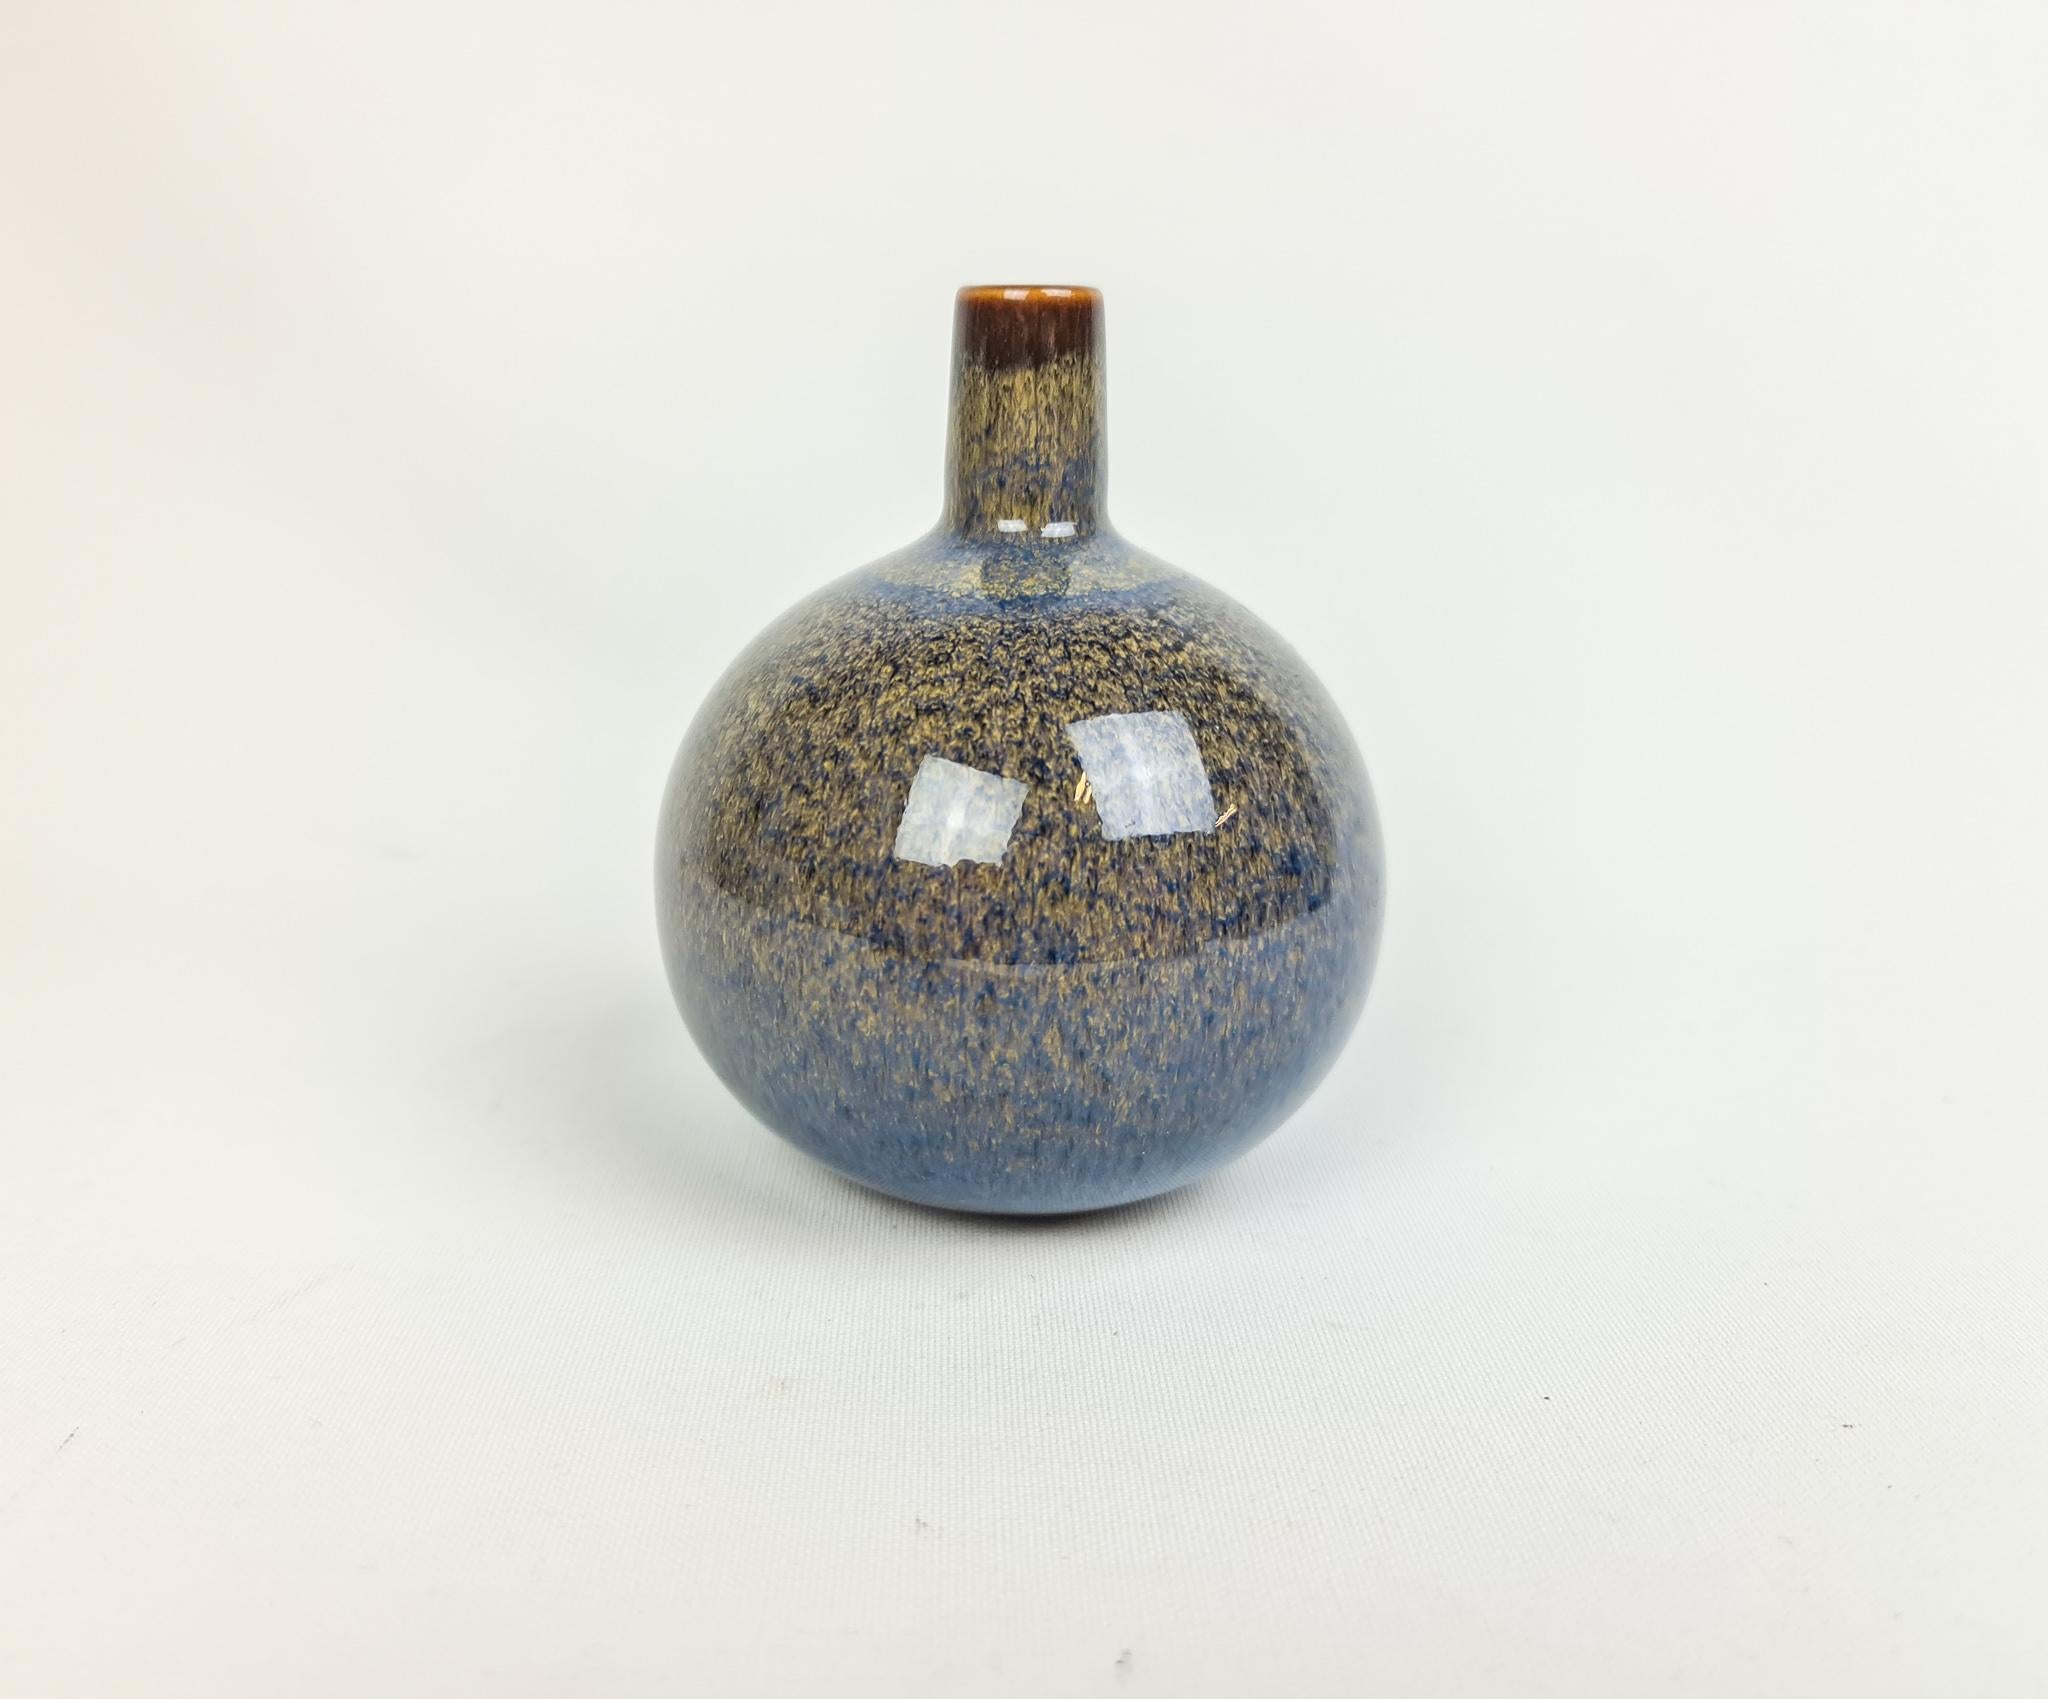 Magnifique vase fabriqué en Suède dans les années 1950 à Rörstrand et conçu par Carl-Harry Stålhane.
Le vase a un beau fond arrondi avec un petit sommet, les lignes et la glaçure sont quelque chose de spécial sur ce petit vase.

Très bon état.